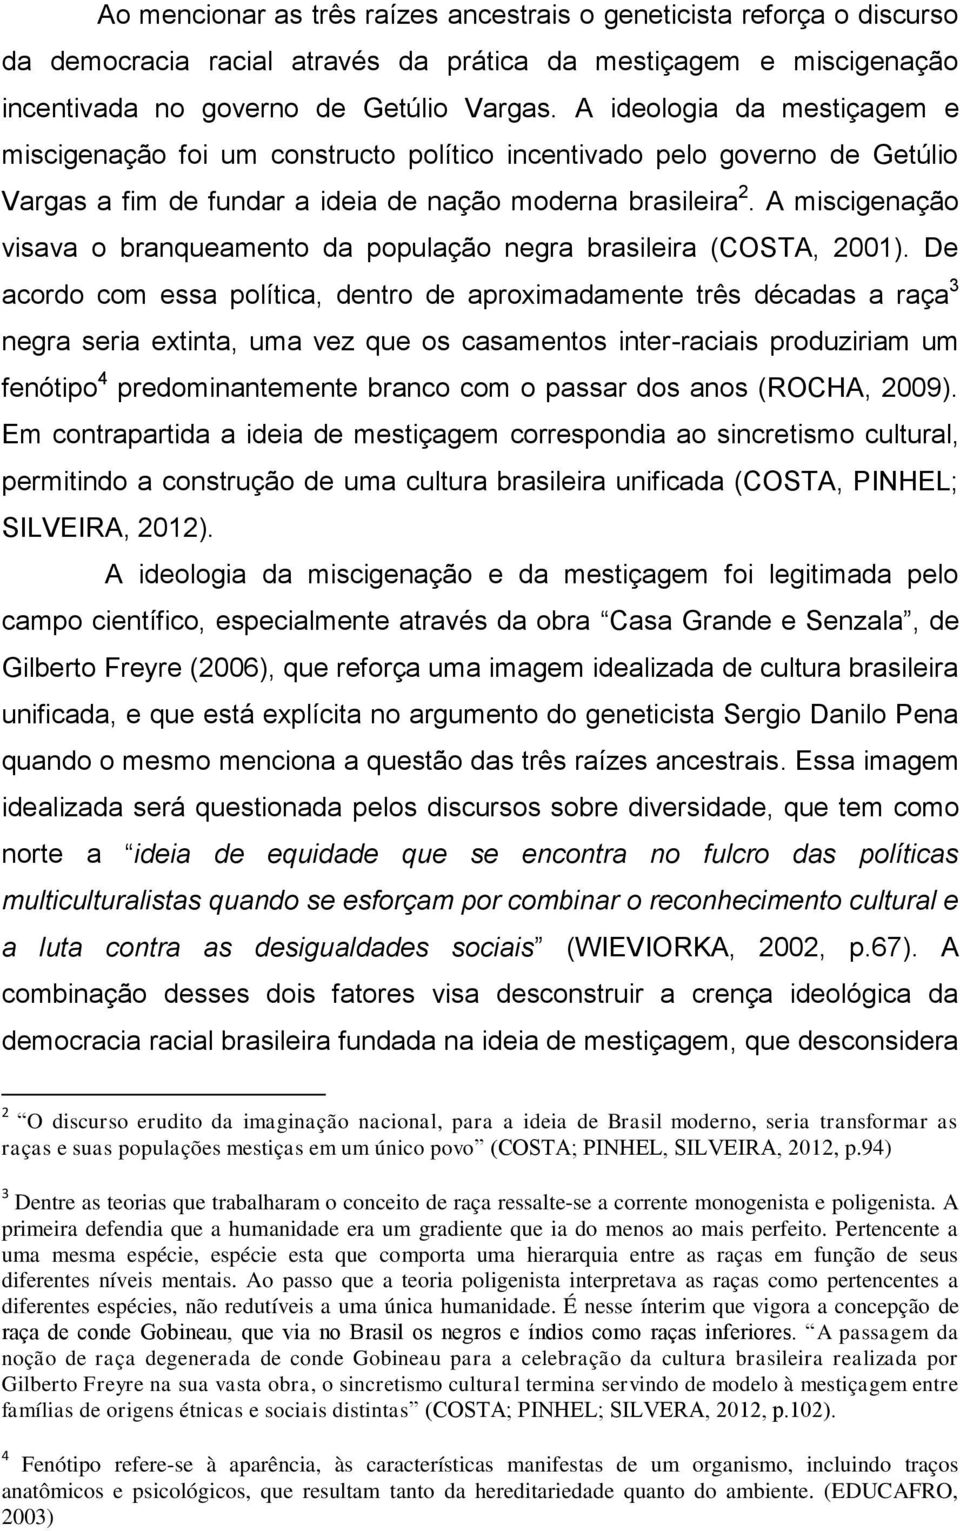 A miscigenação visava o branqueamento da população negra brasileira (COSTA, 2001).